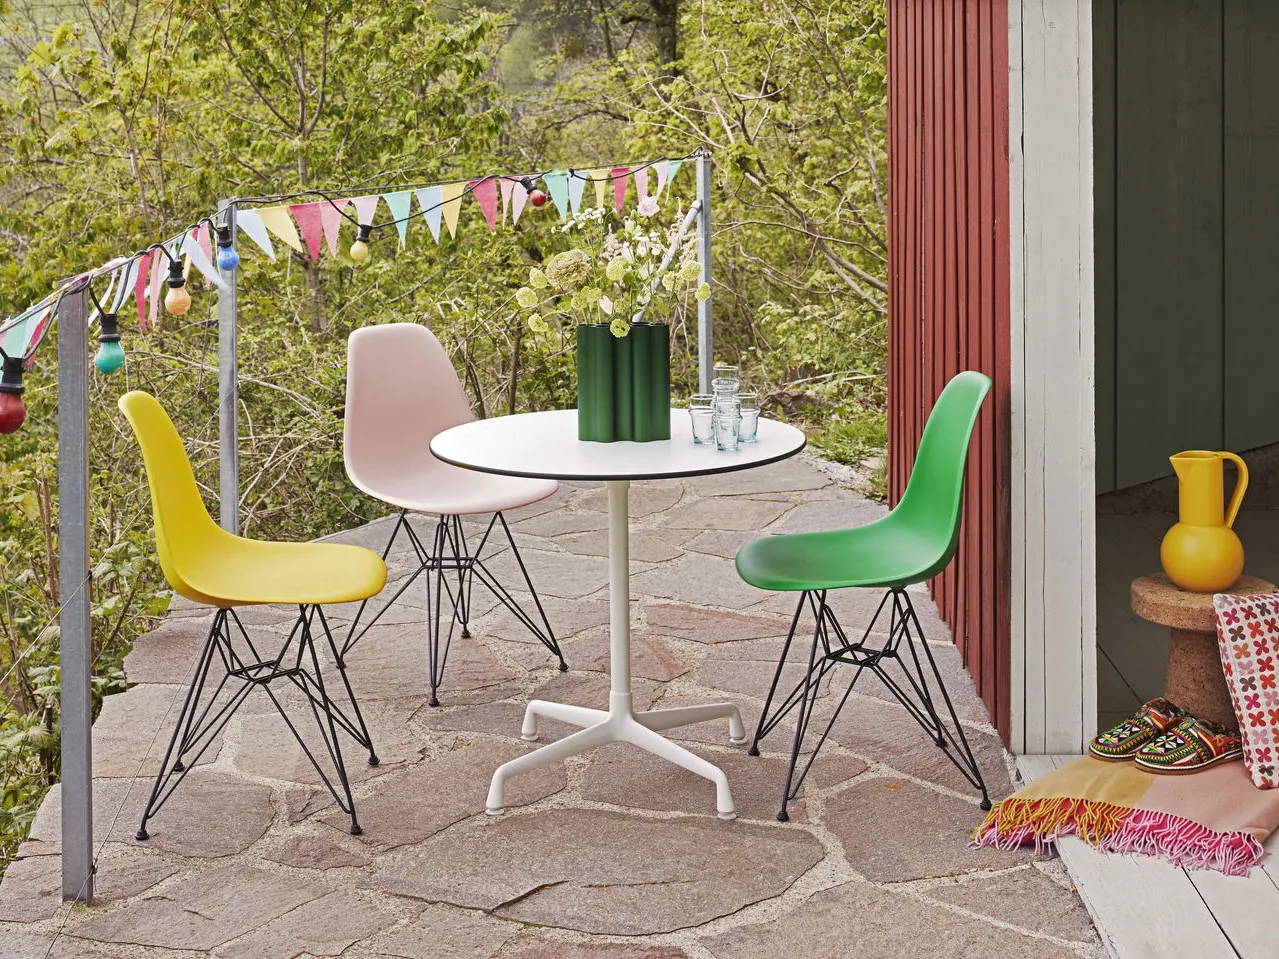 Pool Somber Lijkt op Vitra Eames Chair: zo kies je jouw kuipstoel – HelloChair